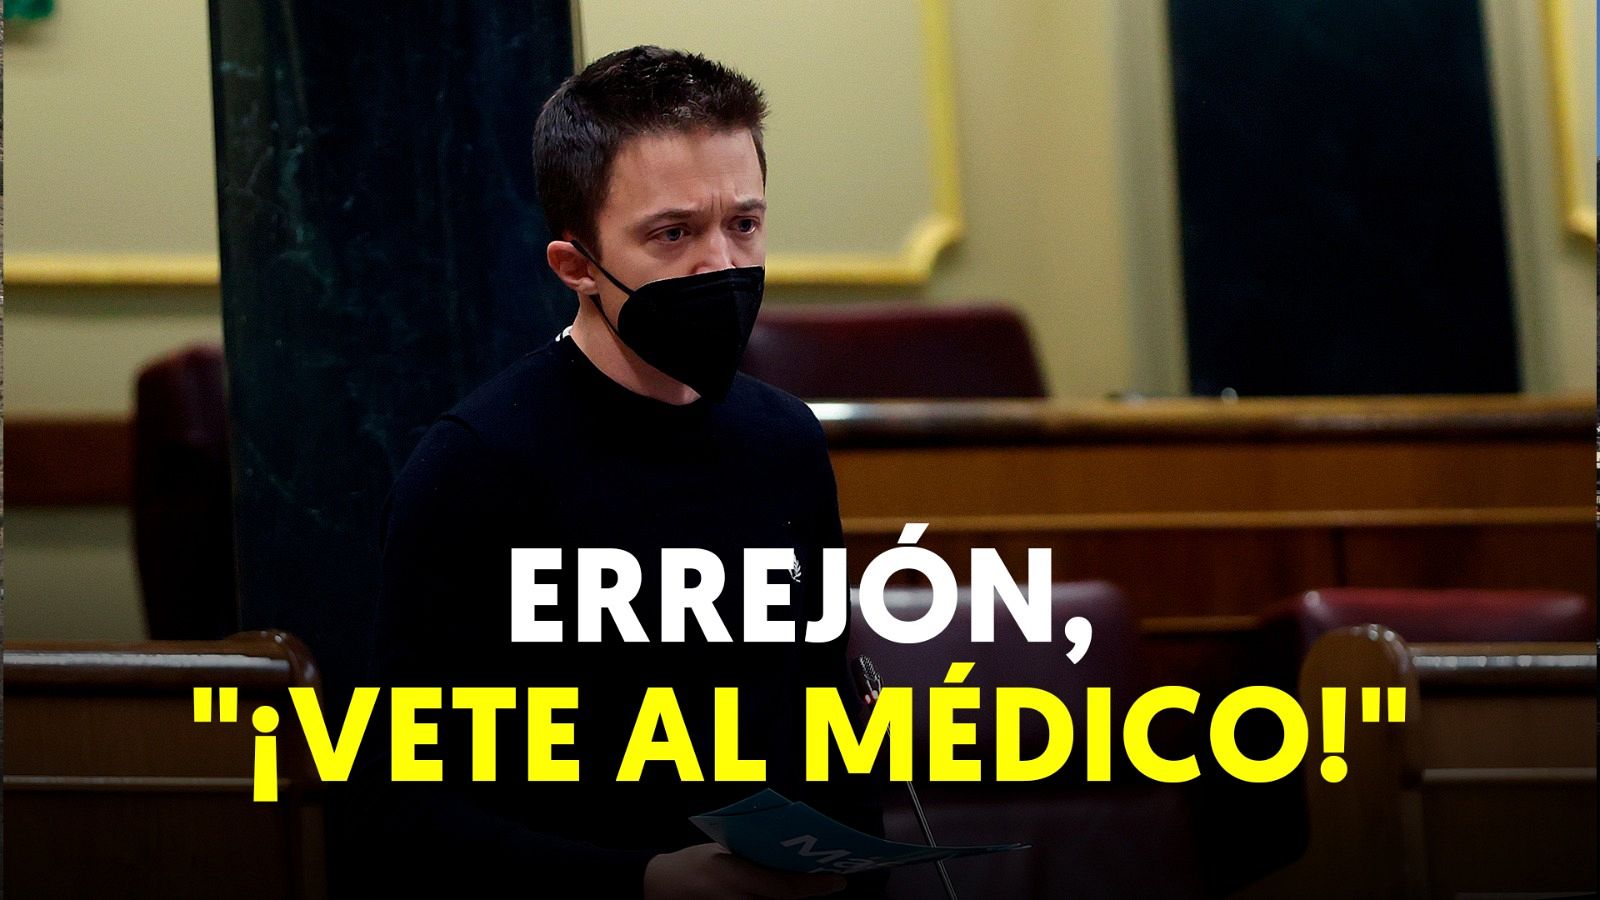 Un diputado del PP le grita "¡Vete al médico!" a Errejón